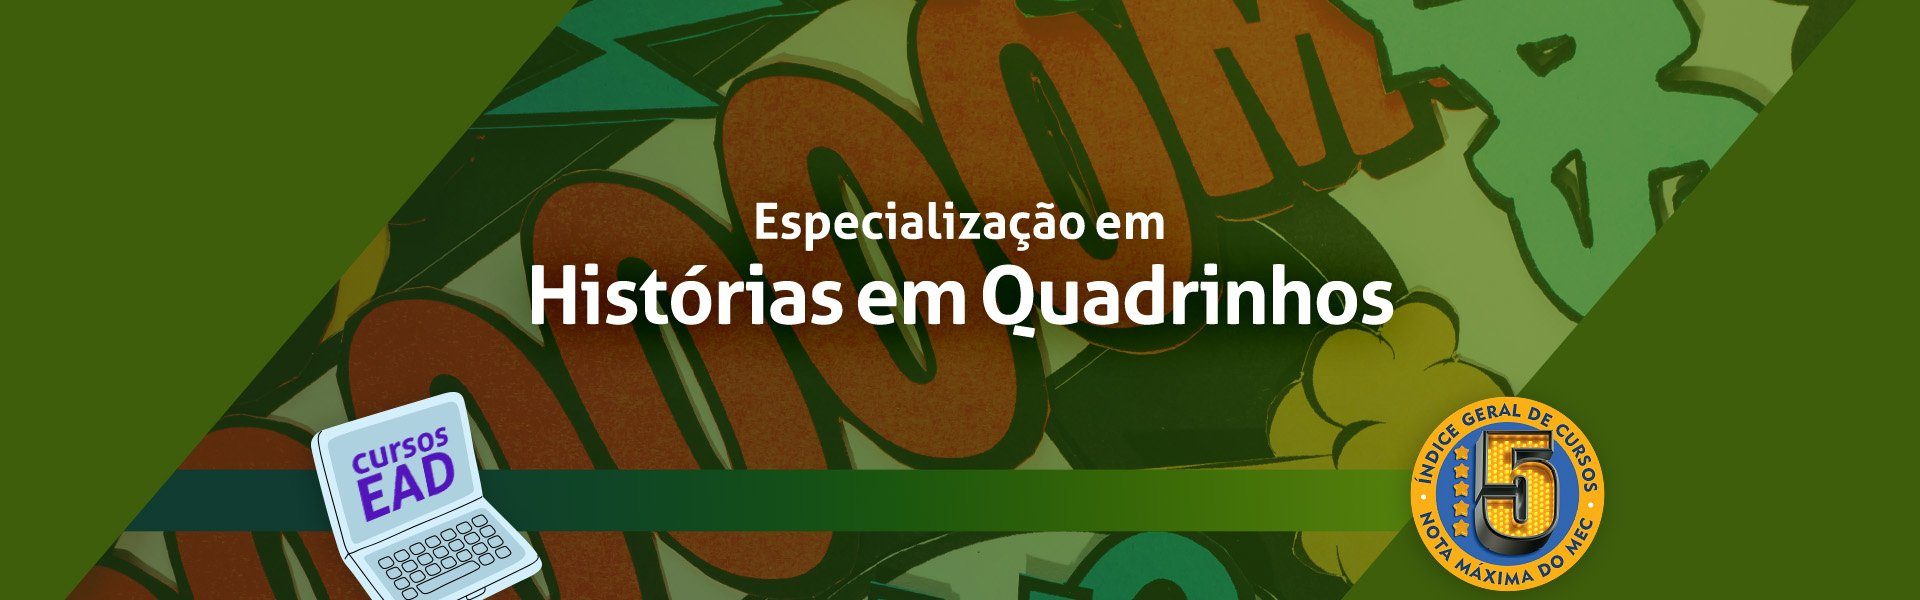 FE 009 24 - Banner SITE Historias em Quadrinhos EAD